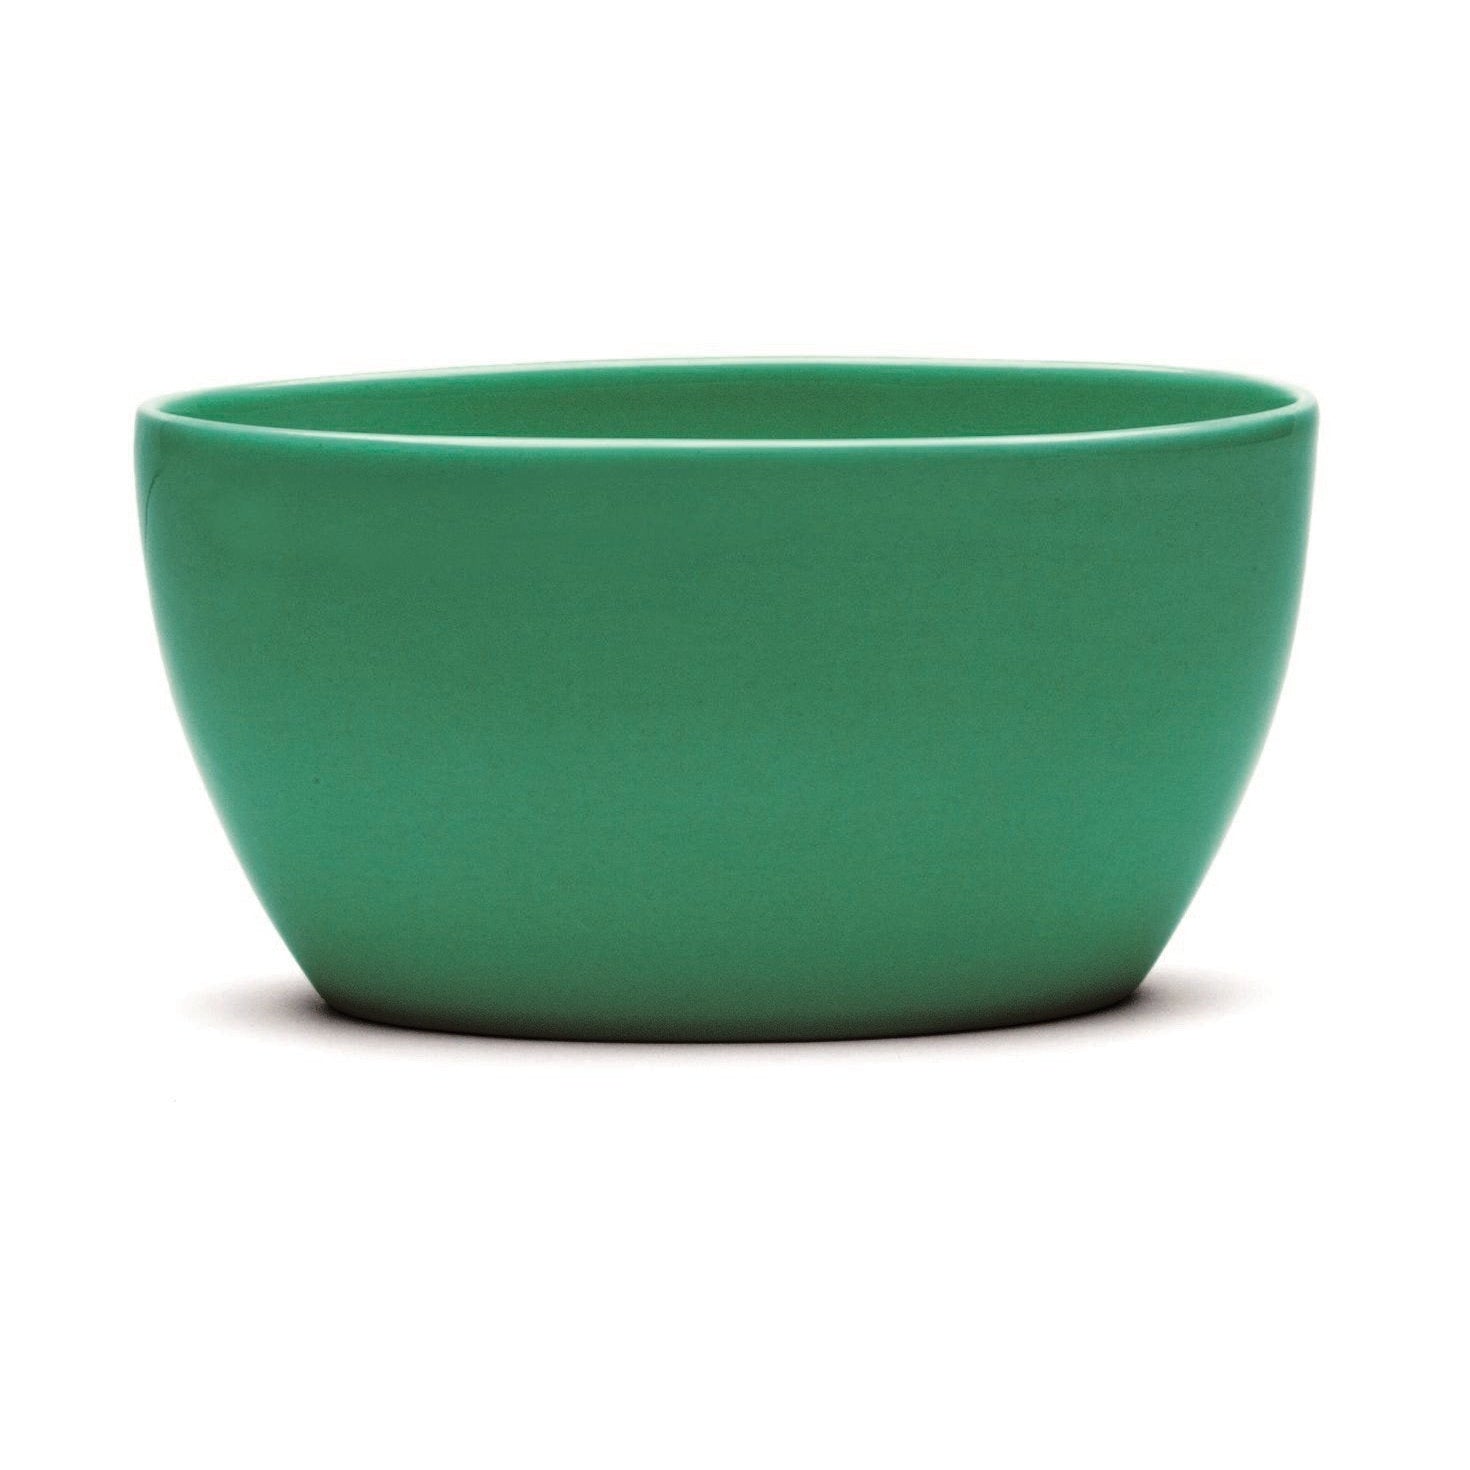 Kähler Ursula Bowl dunkelgrün, mittel, Medium